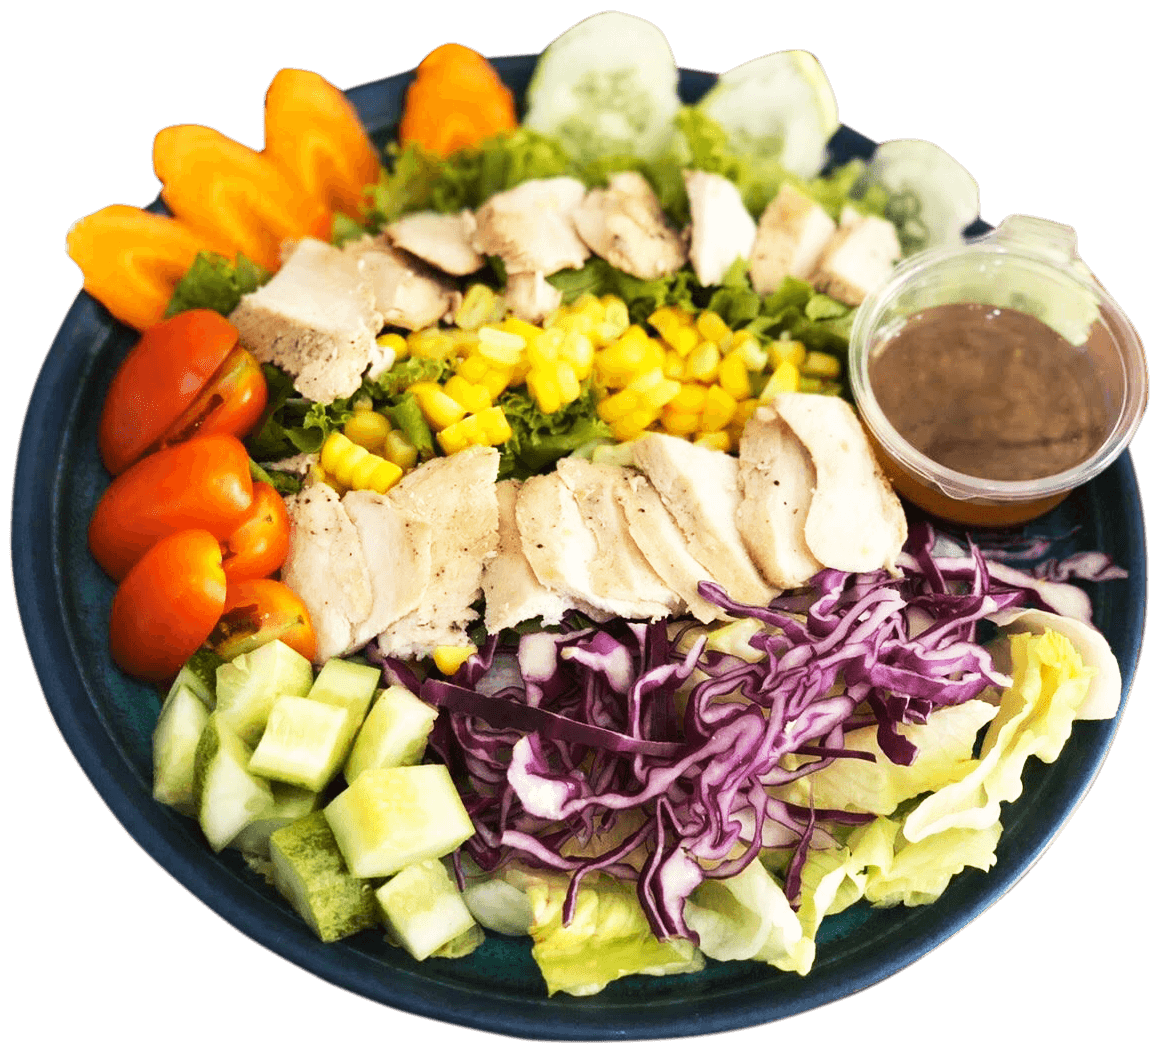 26. Chicken Filet Salad